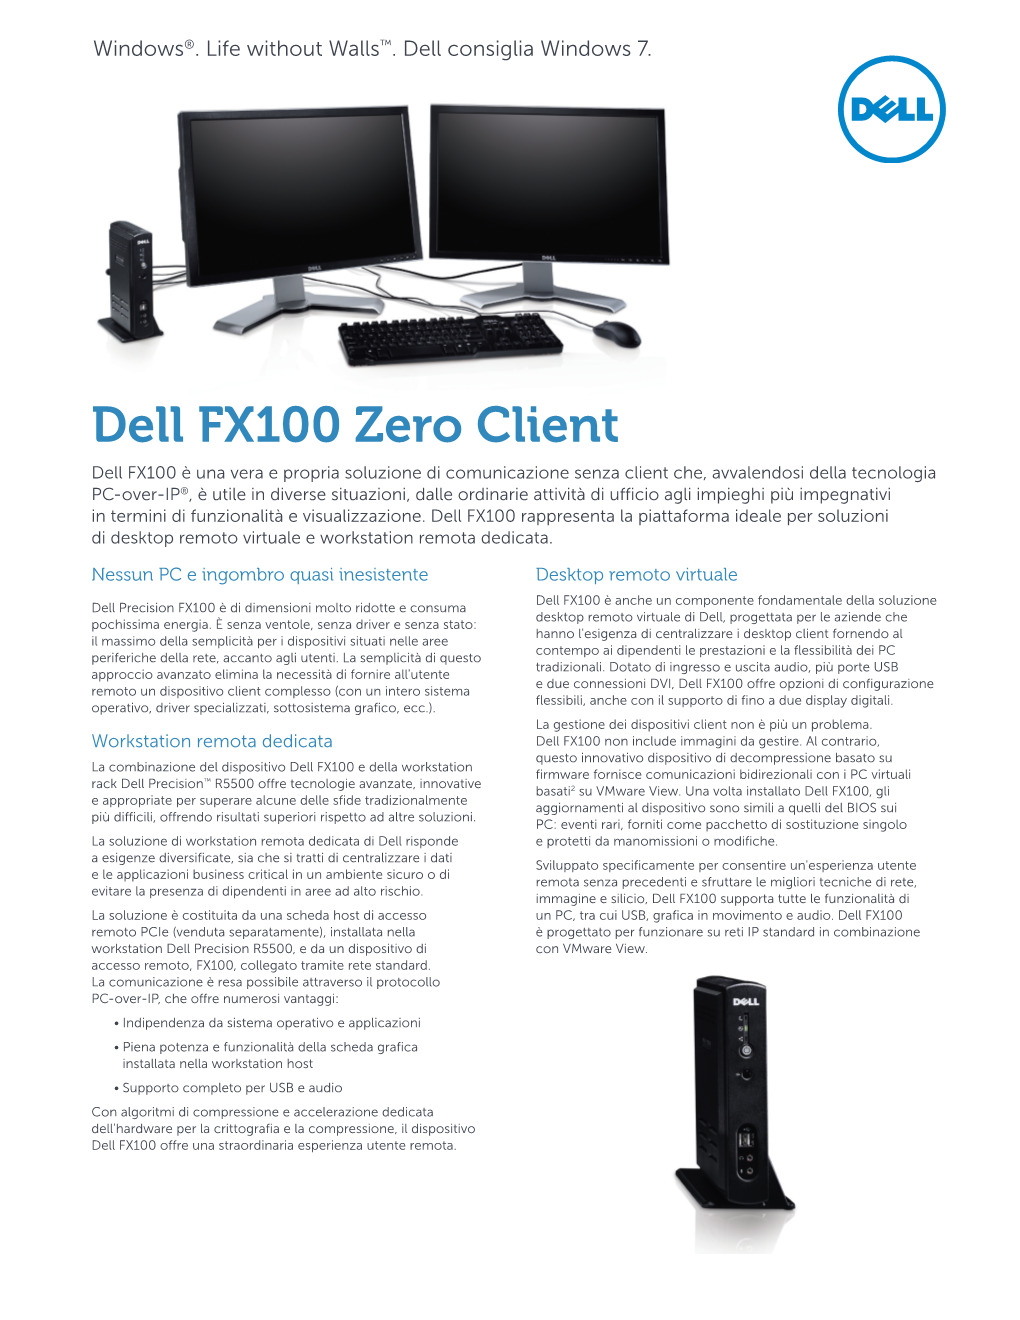 Dell FX100 Zero Client